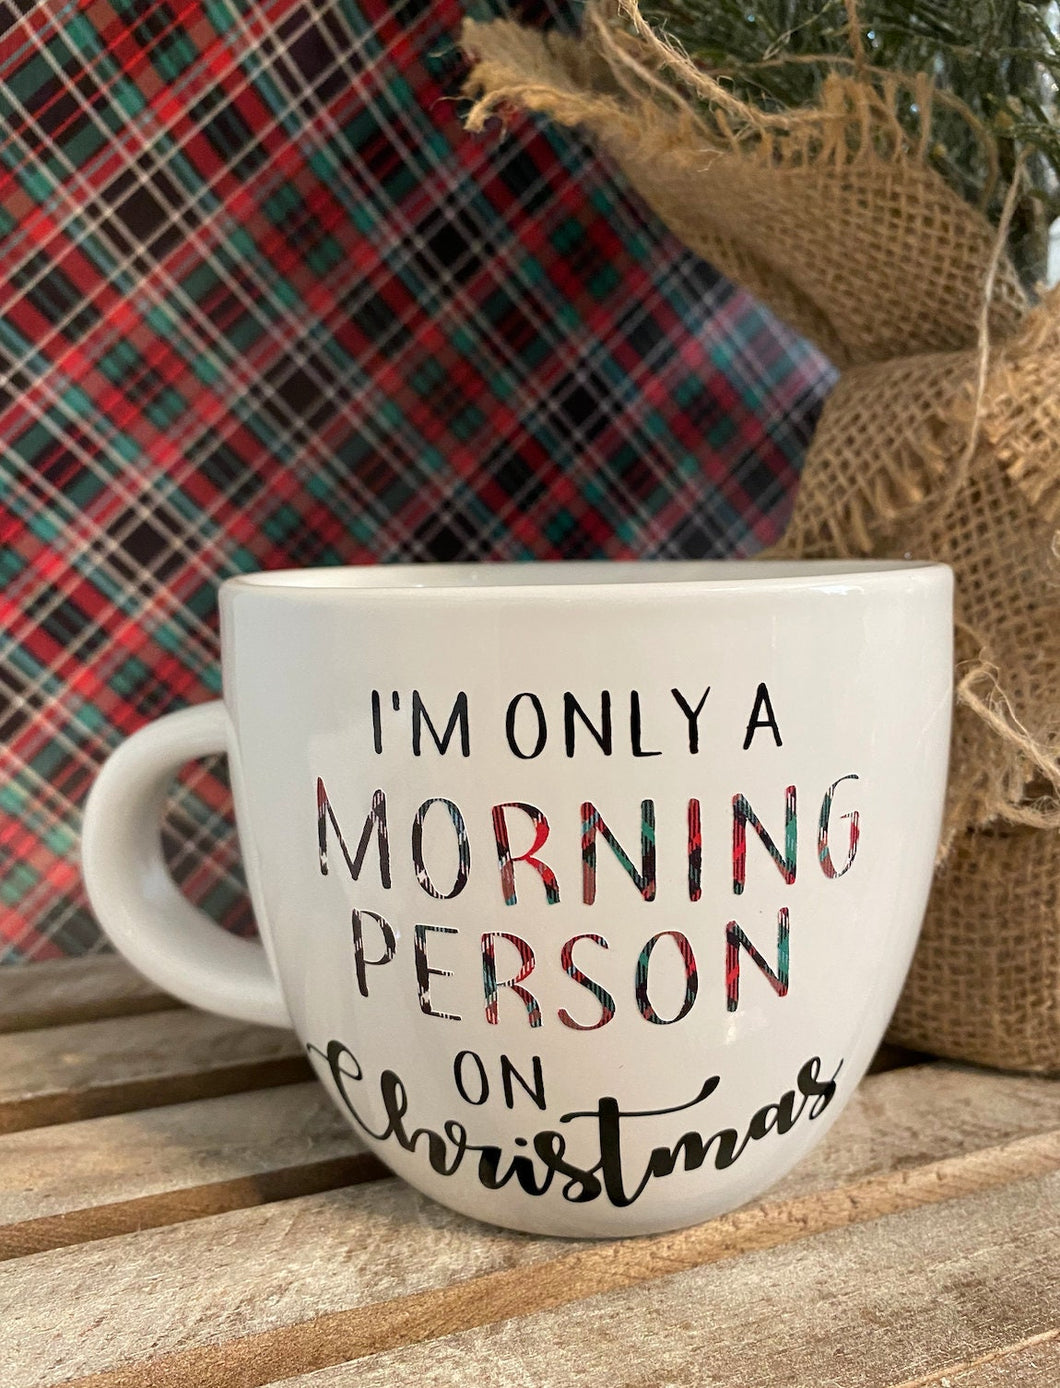 Merry and Bright Campfire Mug | Christmas Mug, Coffee Mug, Enamel Mug, Campfire Mug, Christmas Coffee Mug, Holiday Mug, Hot Chocolate Mug